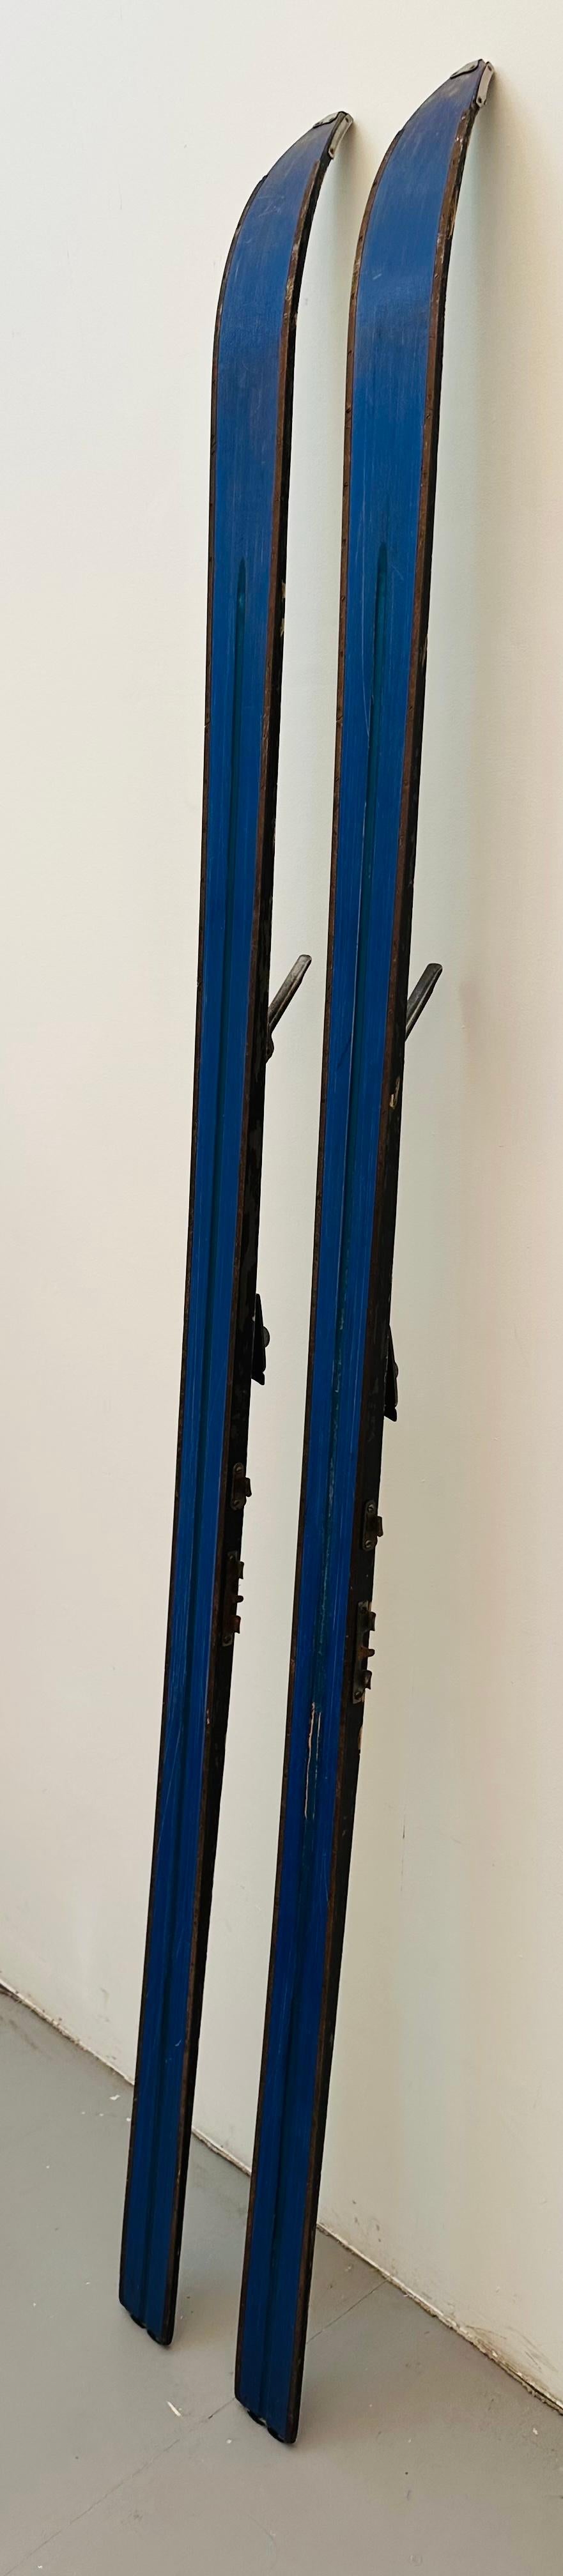 Pair of Vintage 1950s German Schonherr Superspeed Wooden Skis with Bindings For Sale 11